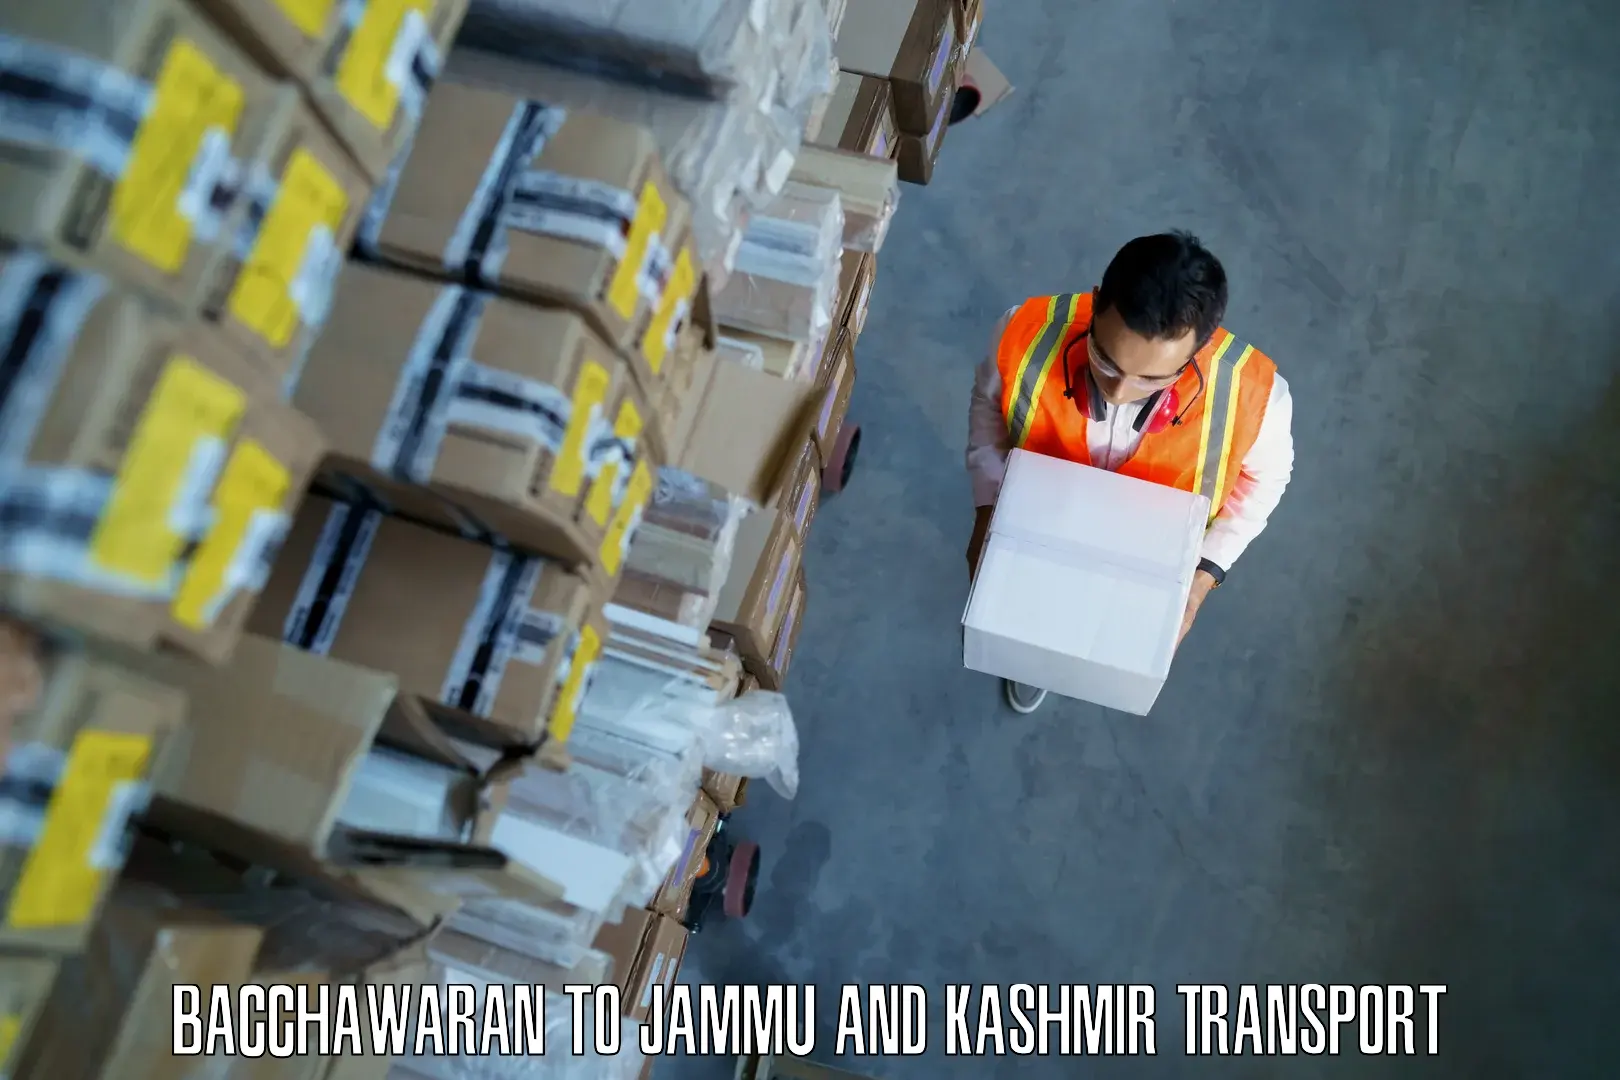 Transport in sharing Bacchawaran to Srinagar Kashmir